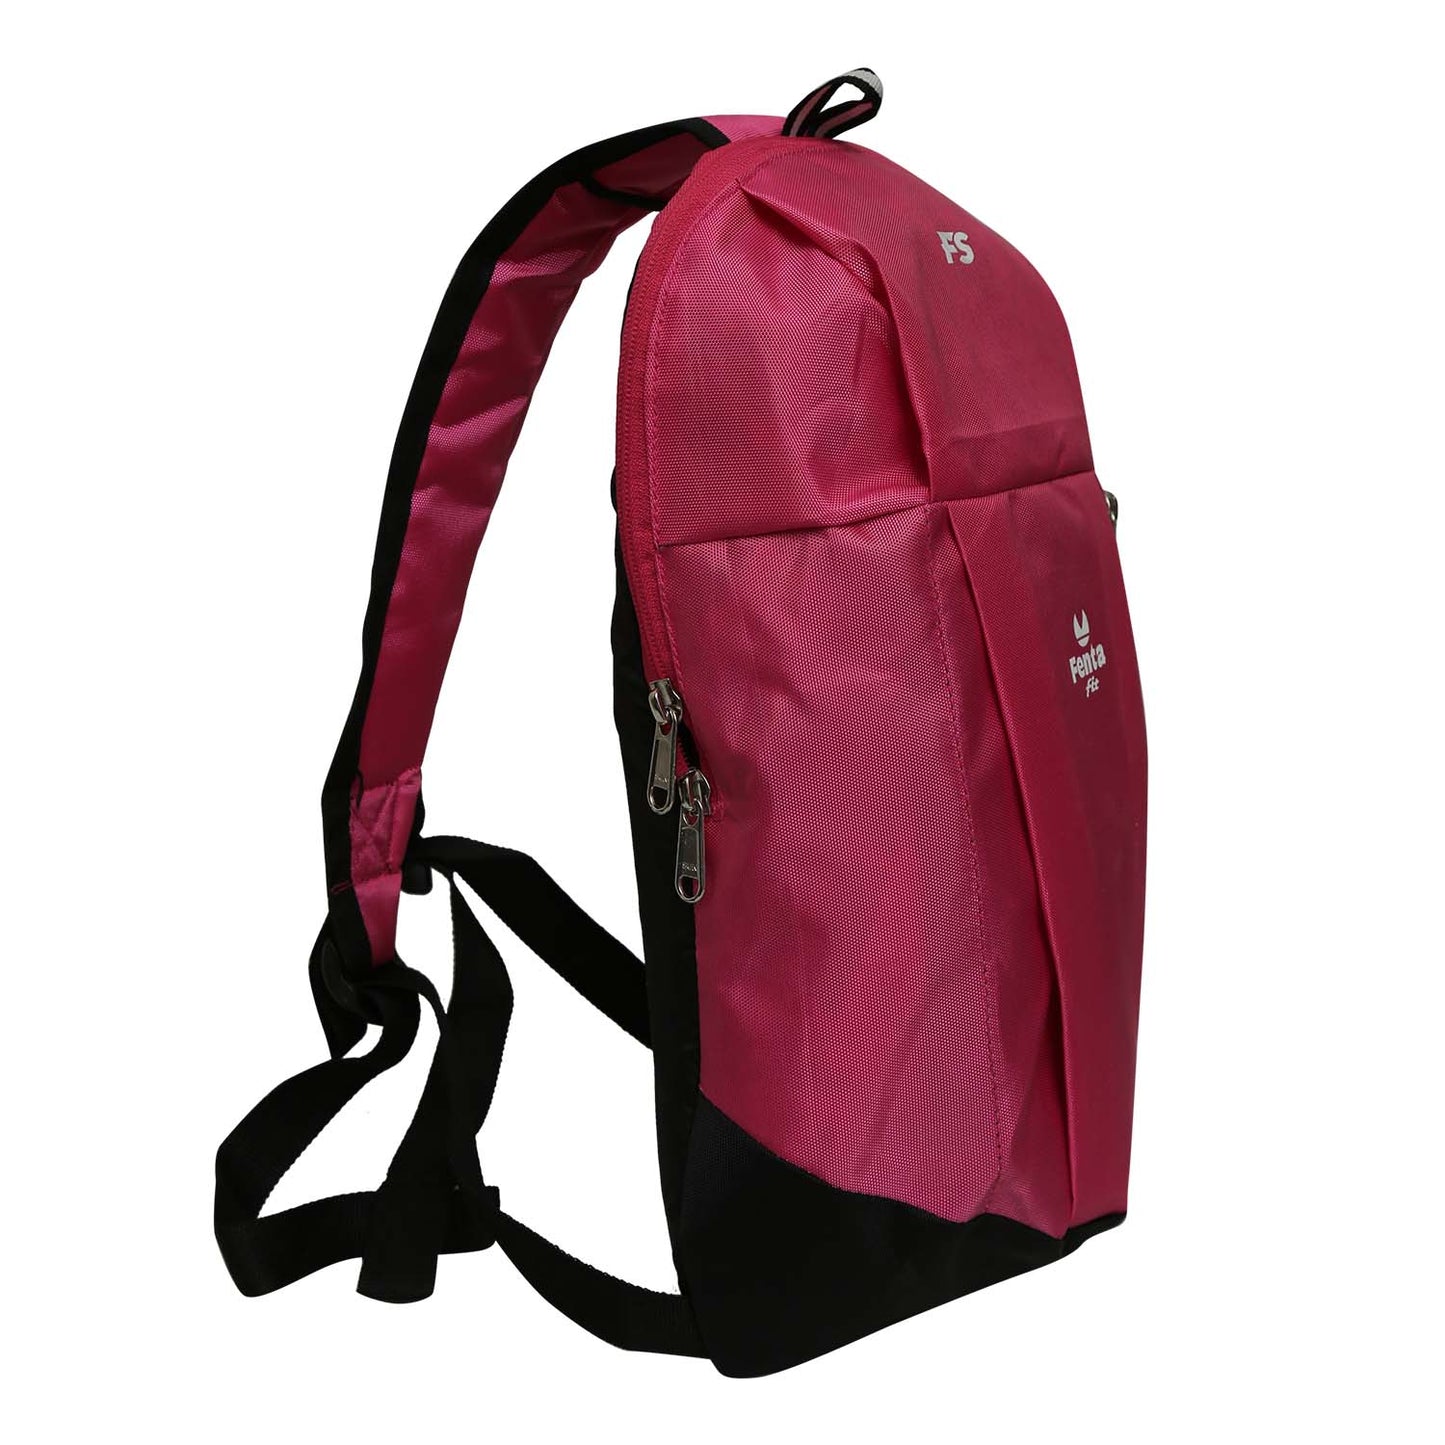 Fents Sports Unisx Bag Backpack (Pink- Black)